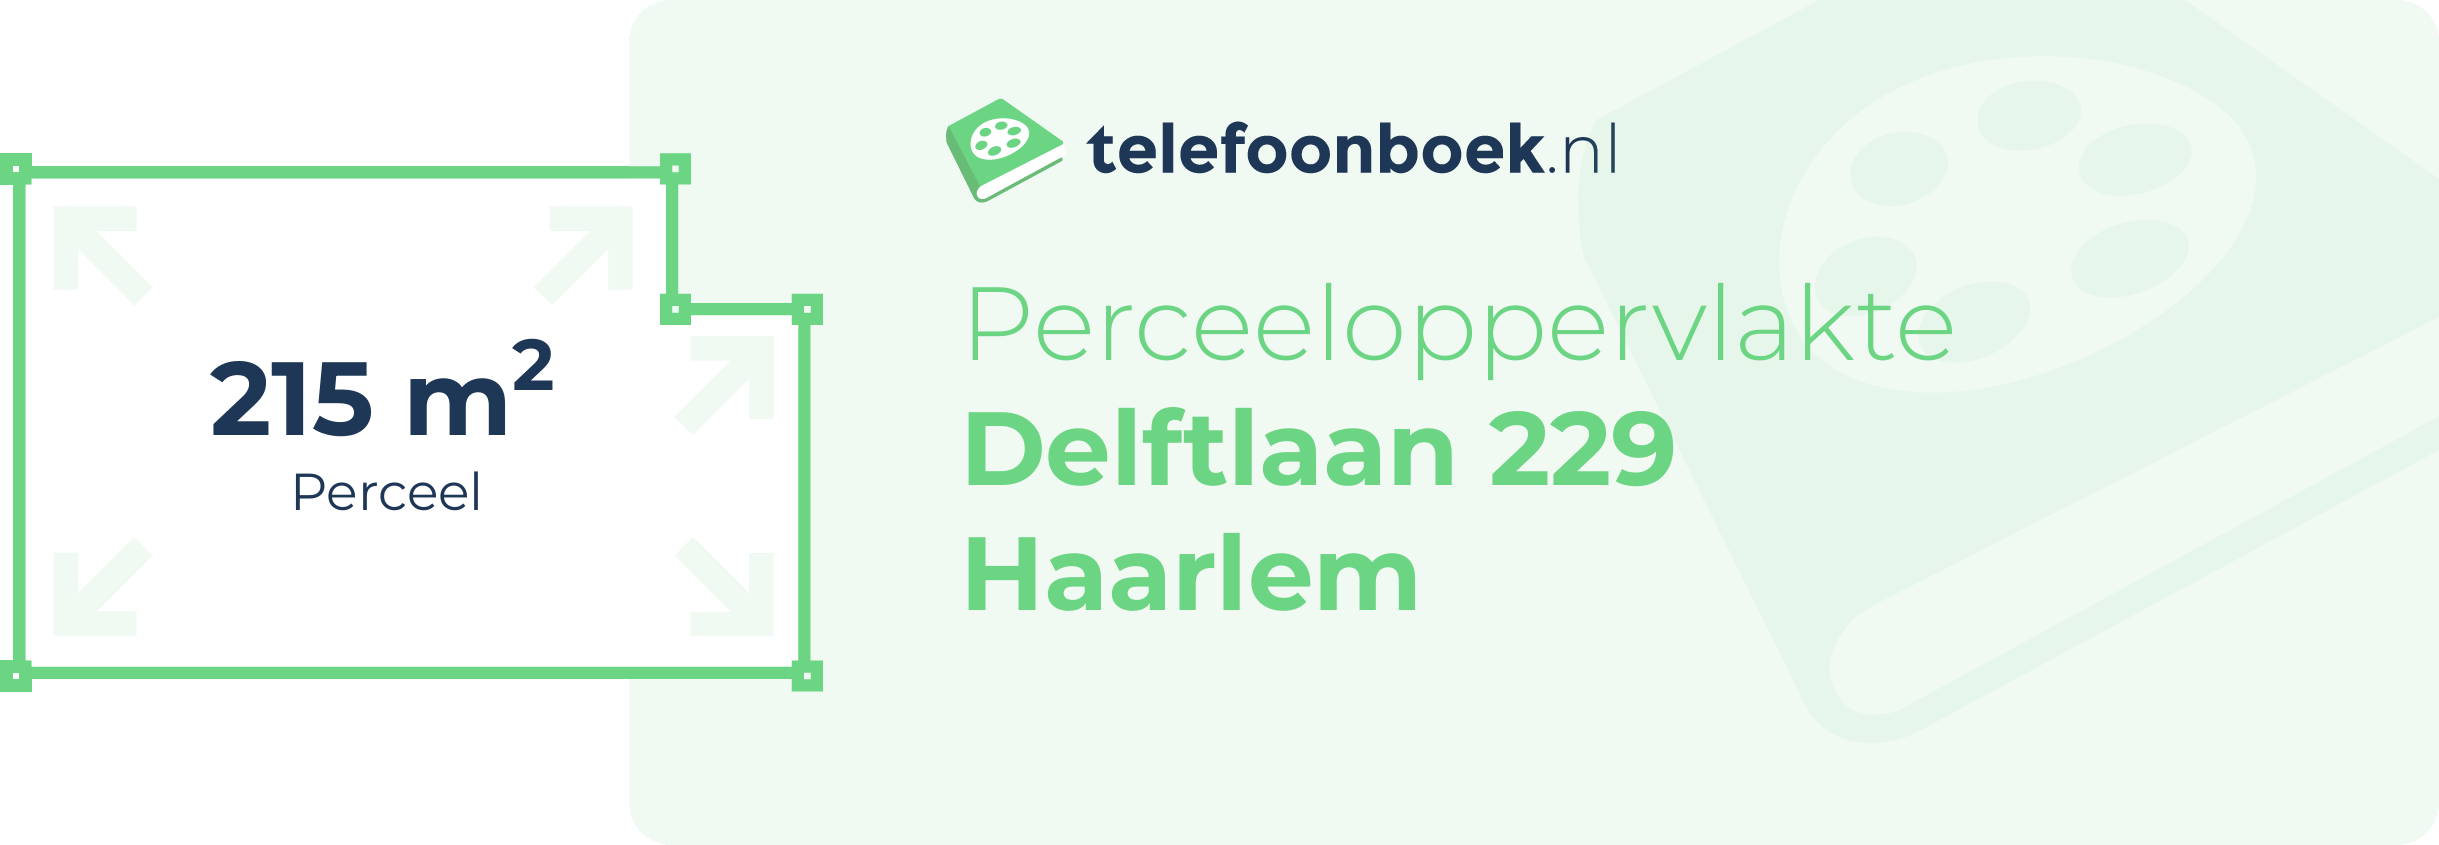 Perceeloppervlakte Delftlaan 229 Haarlem